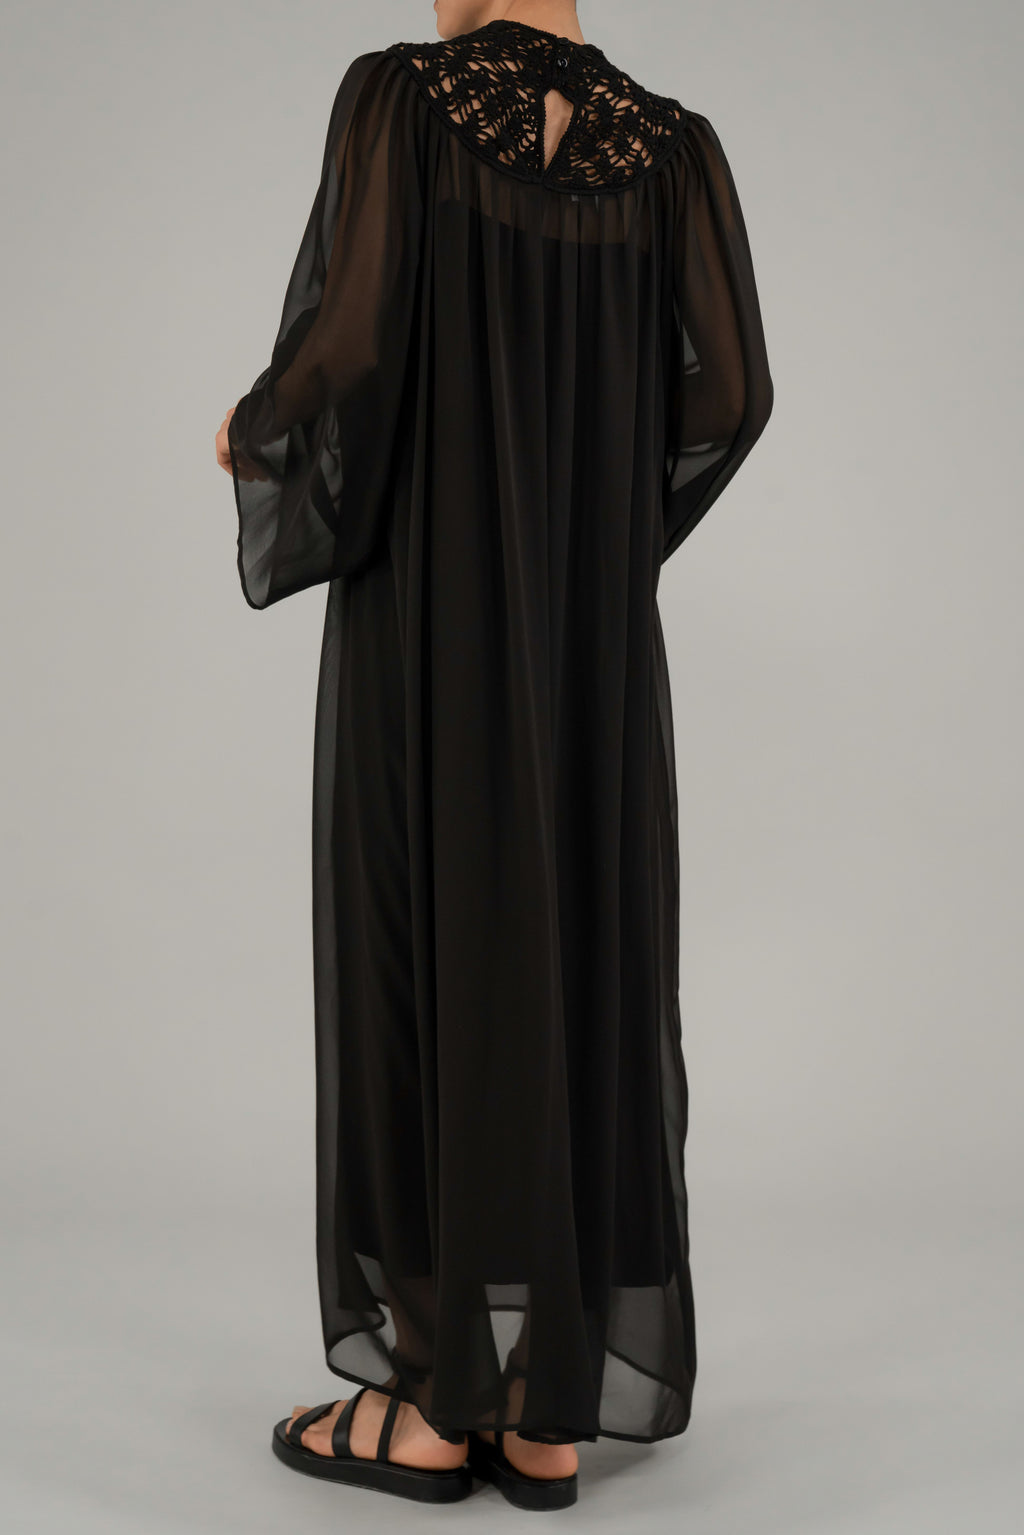 Penelope dress | Black - Sheer Virgin Wool